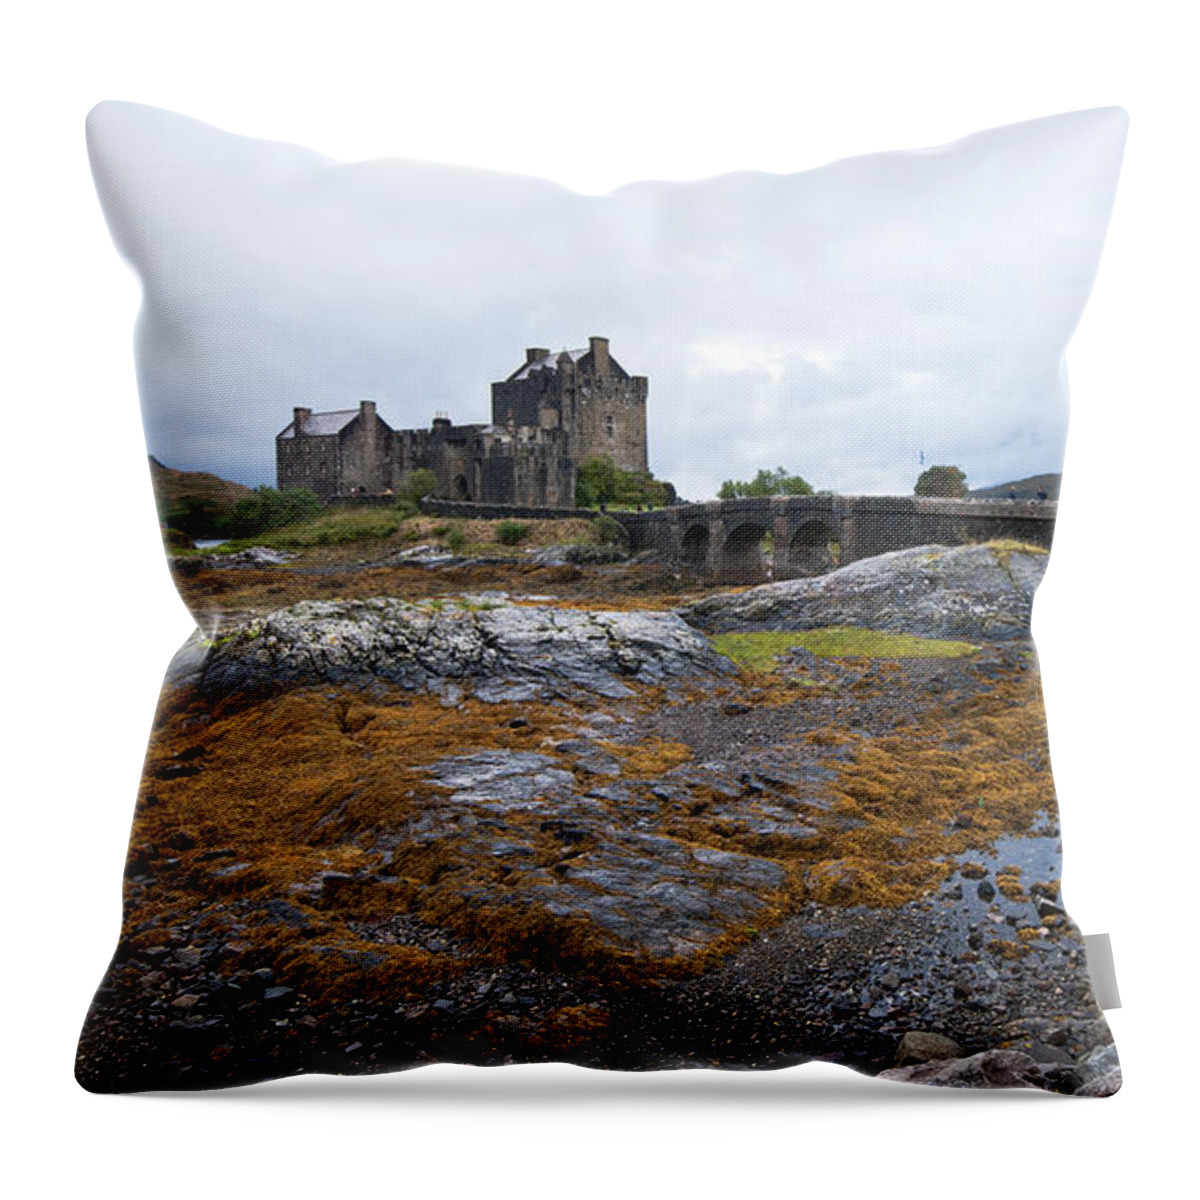  Eilean Donan Throw Pillow featuring the photograph Eilean Donan castle by Michalakis Ppalis